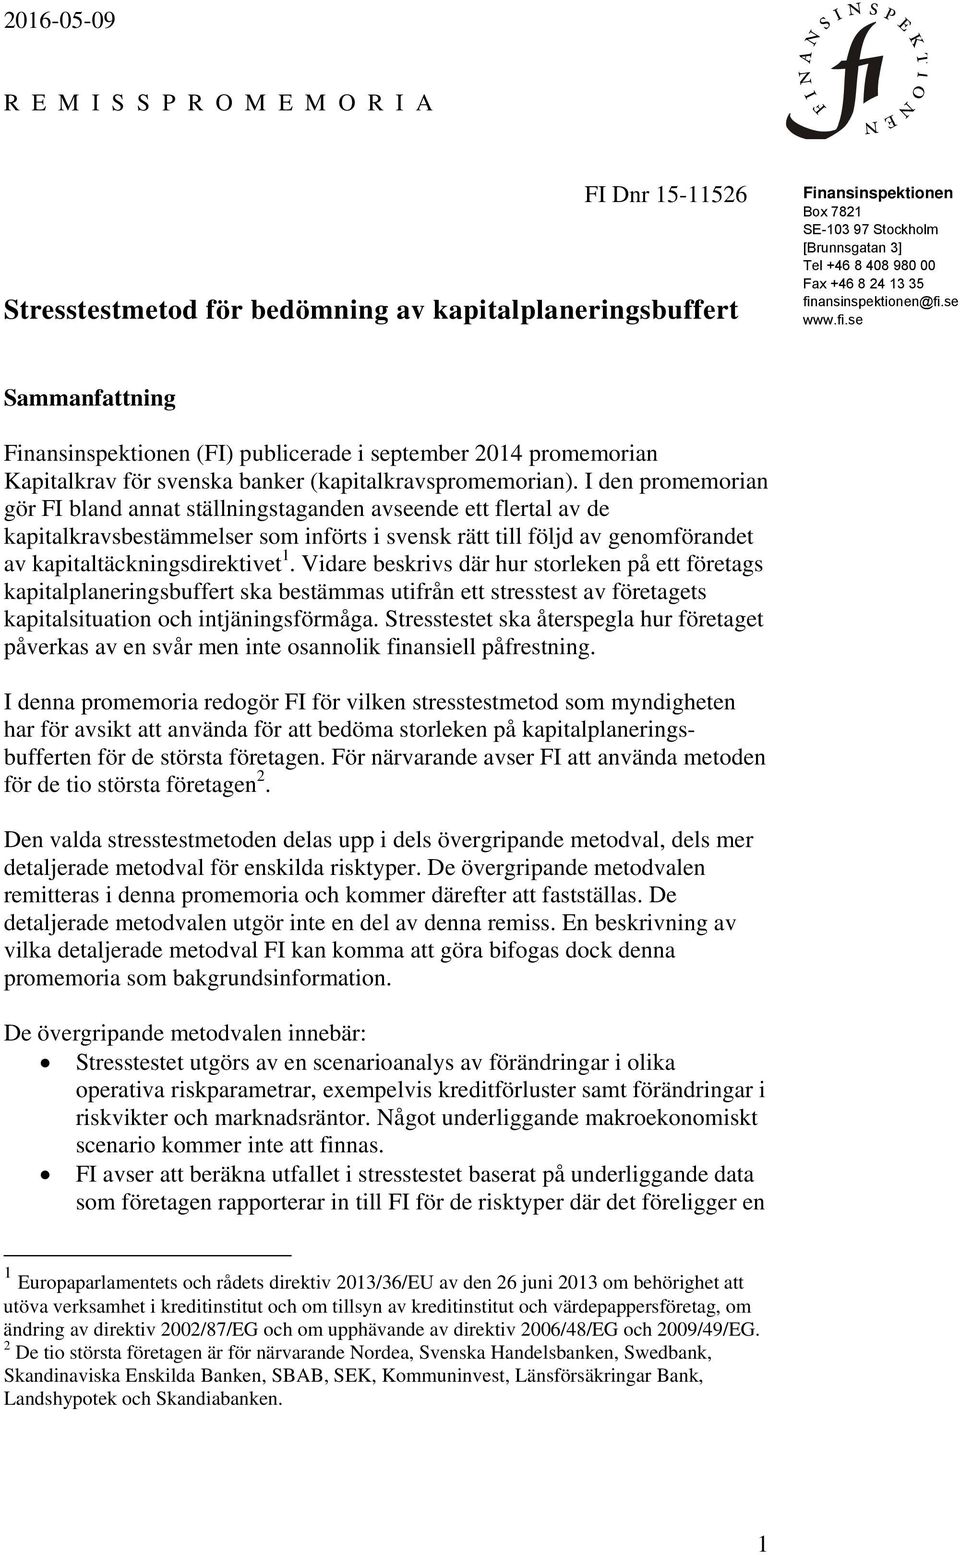 I den promemorian gör FI bland annat ställningstaganden avseende ett flertal av de kapitalkravsbestämmelser som införts i svensk rätt till följd av genomförandet av kapitaltäckningsdirektivet 1.